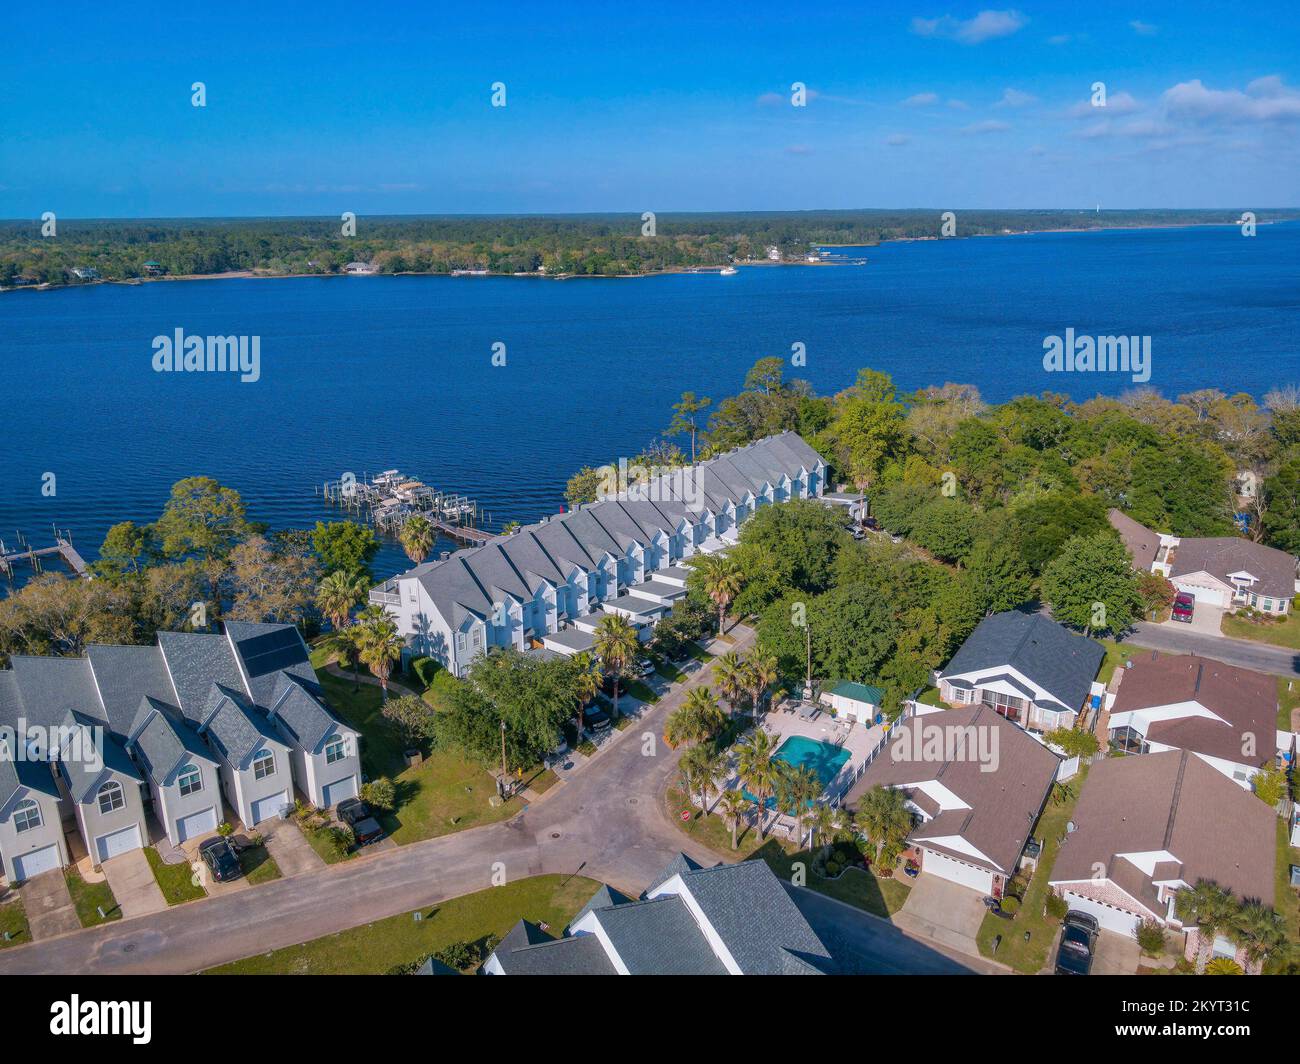 Stadthäuser und Ferienwohnung mit Blick auf die malerische blaue Bucht in Navarre Florida. Luftlandschaft von Wohnhäusern am Ufer vor einem ruhigen Gewässer Stockfoto